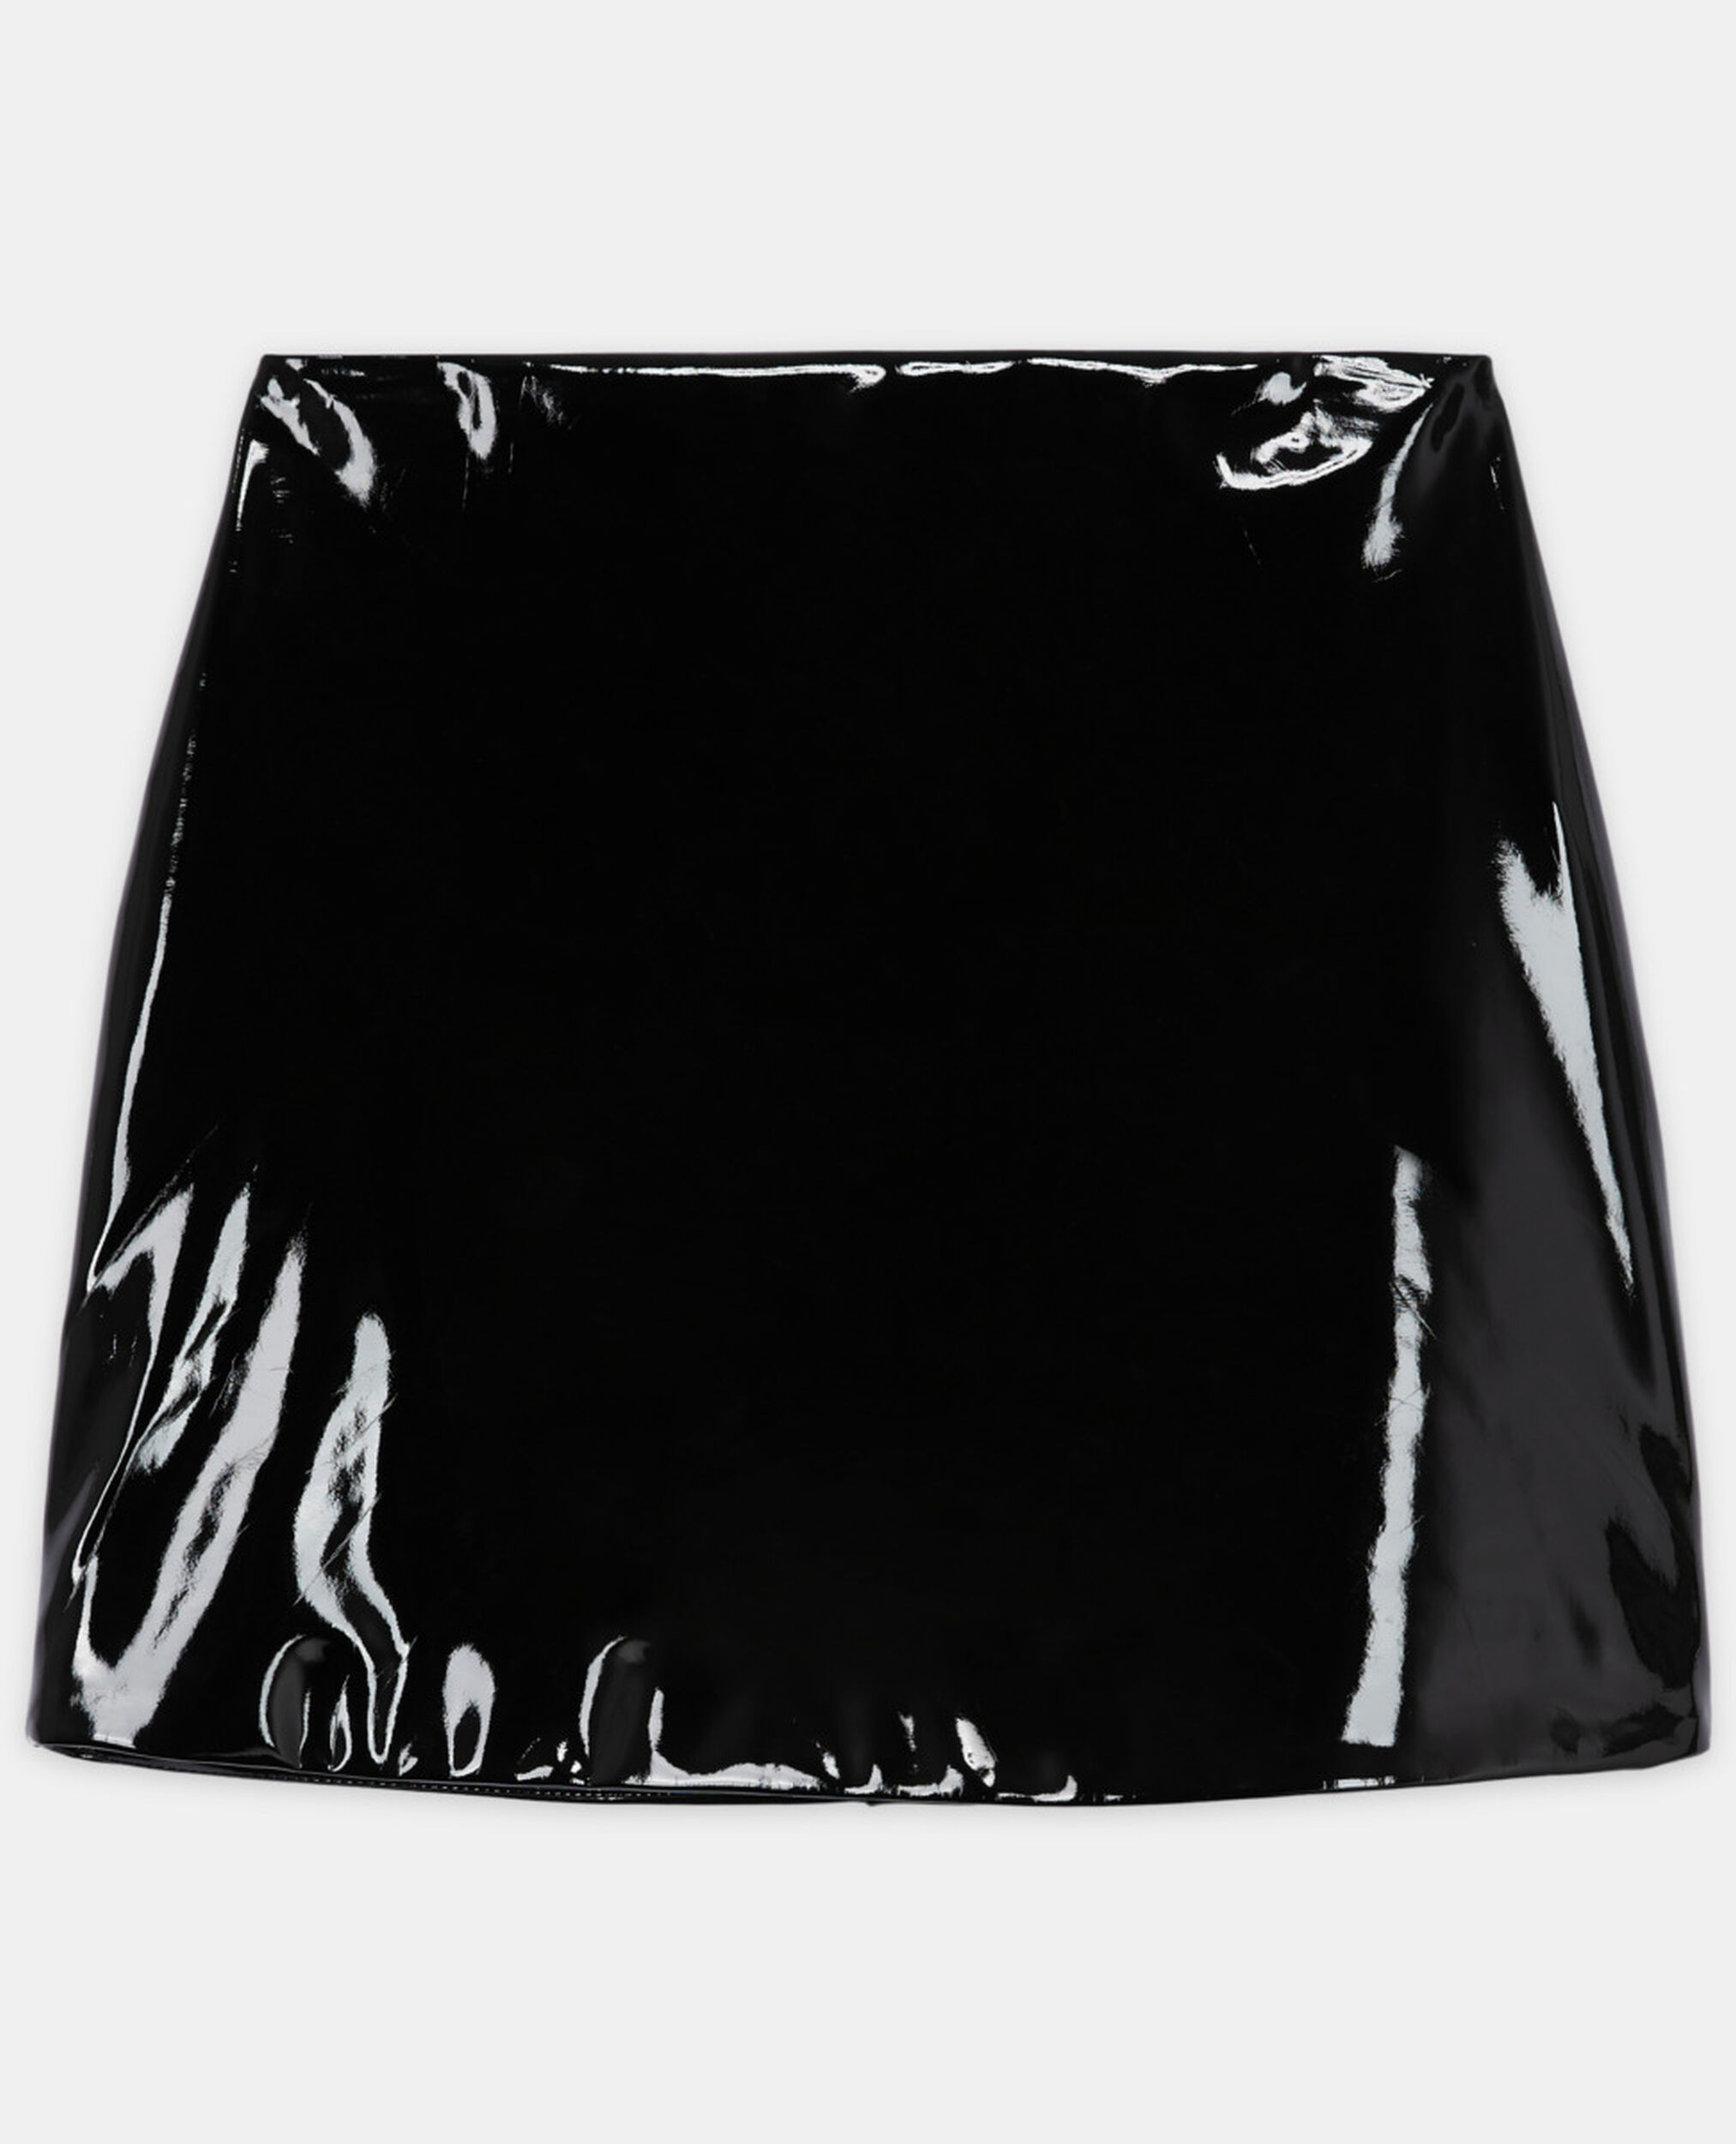 Short black vinyl skirt, BLACK, hi-res image number null